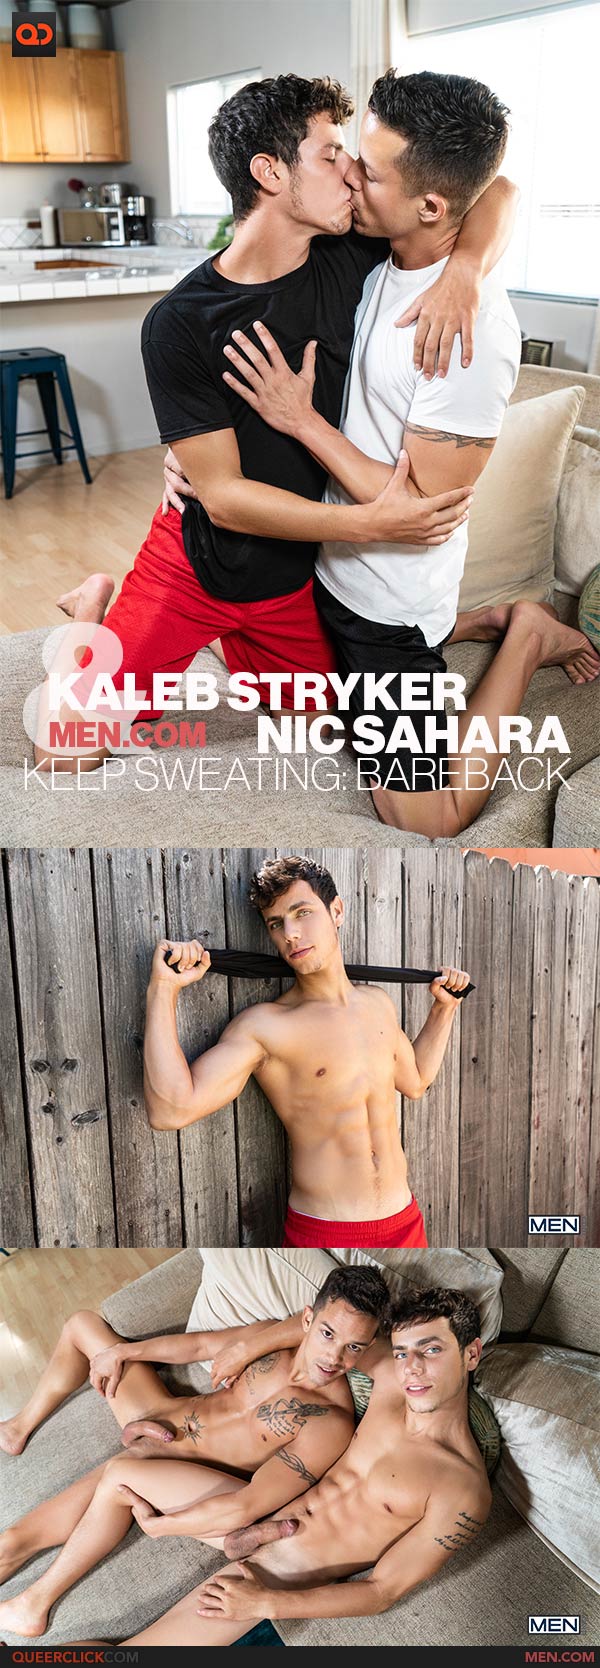 Men.com: Kaleb Stryker and Nic Sahara